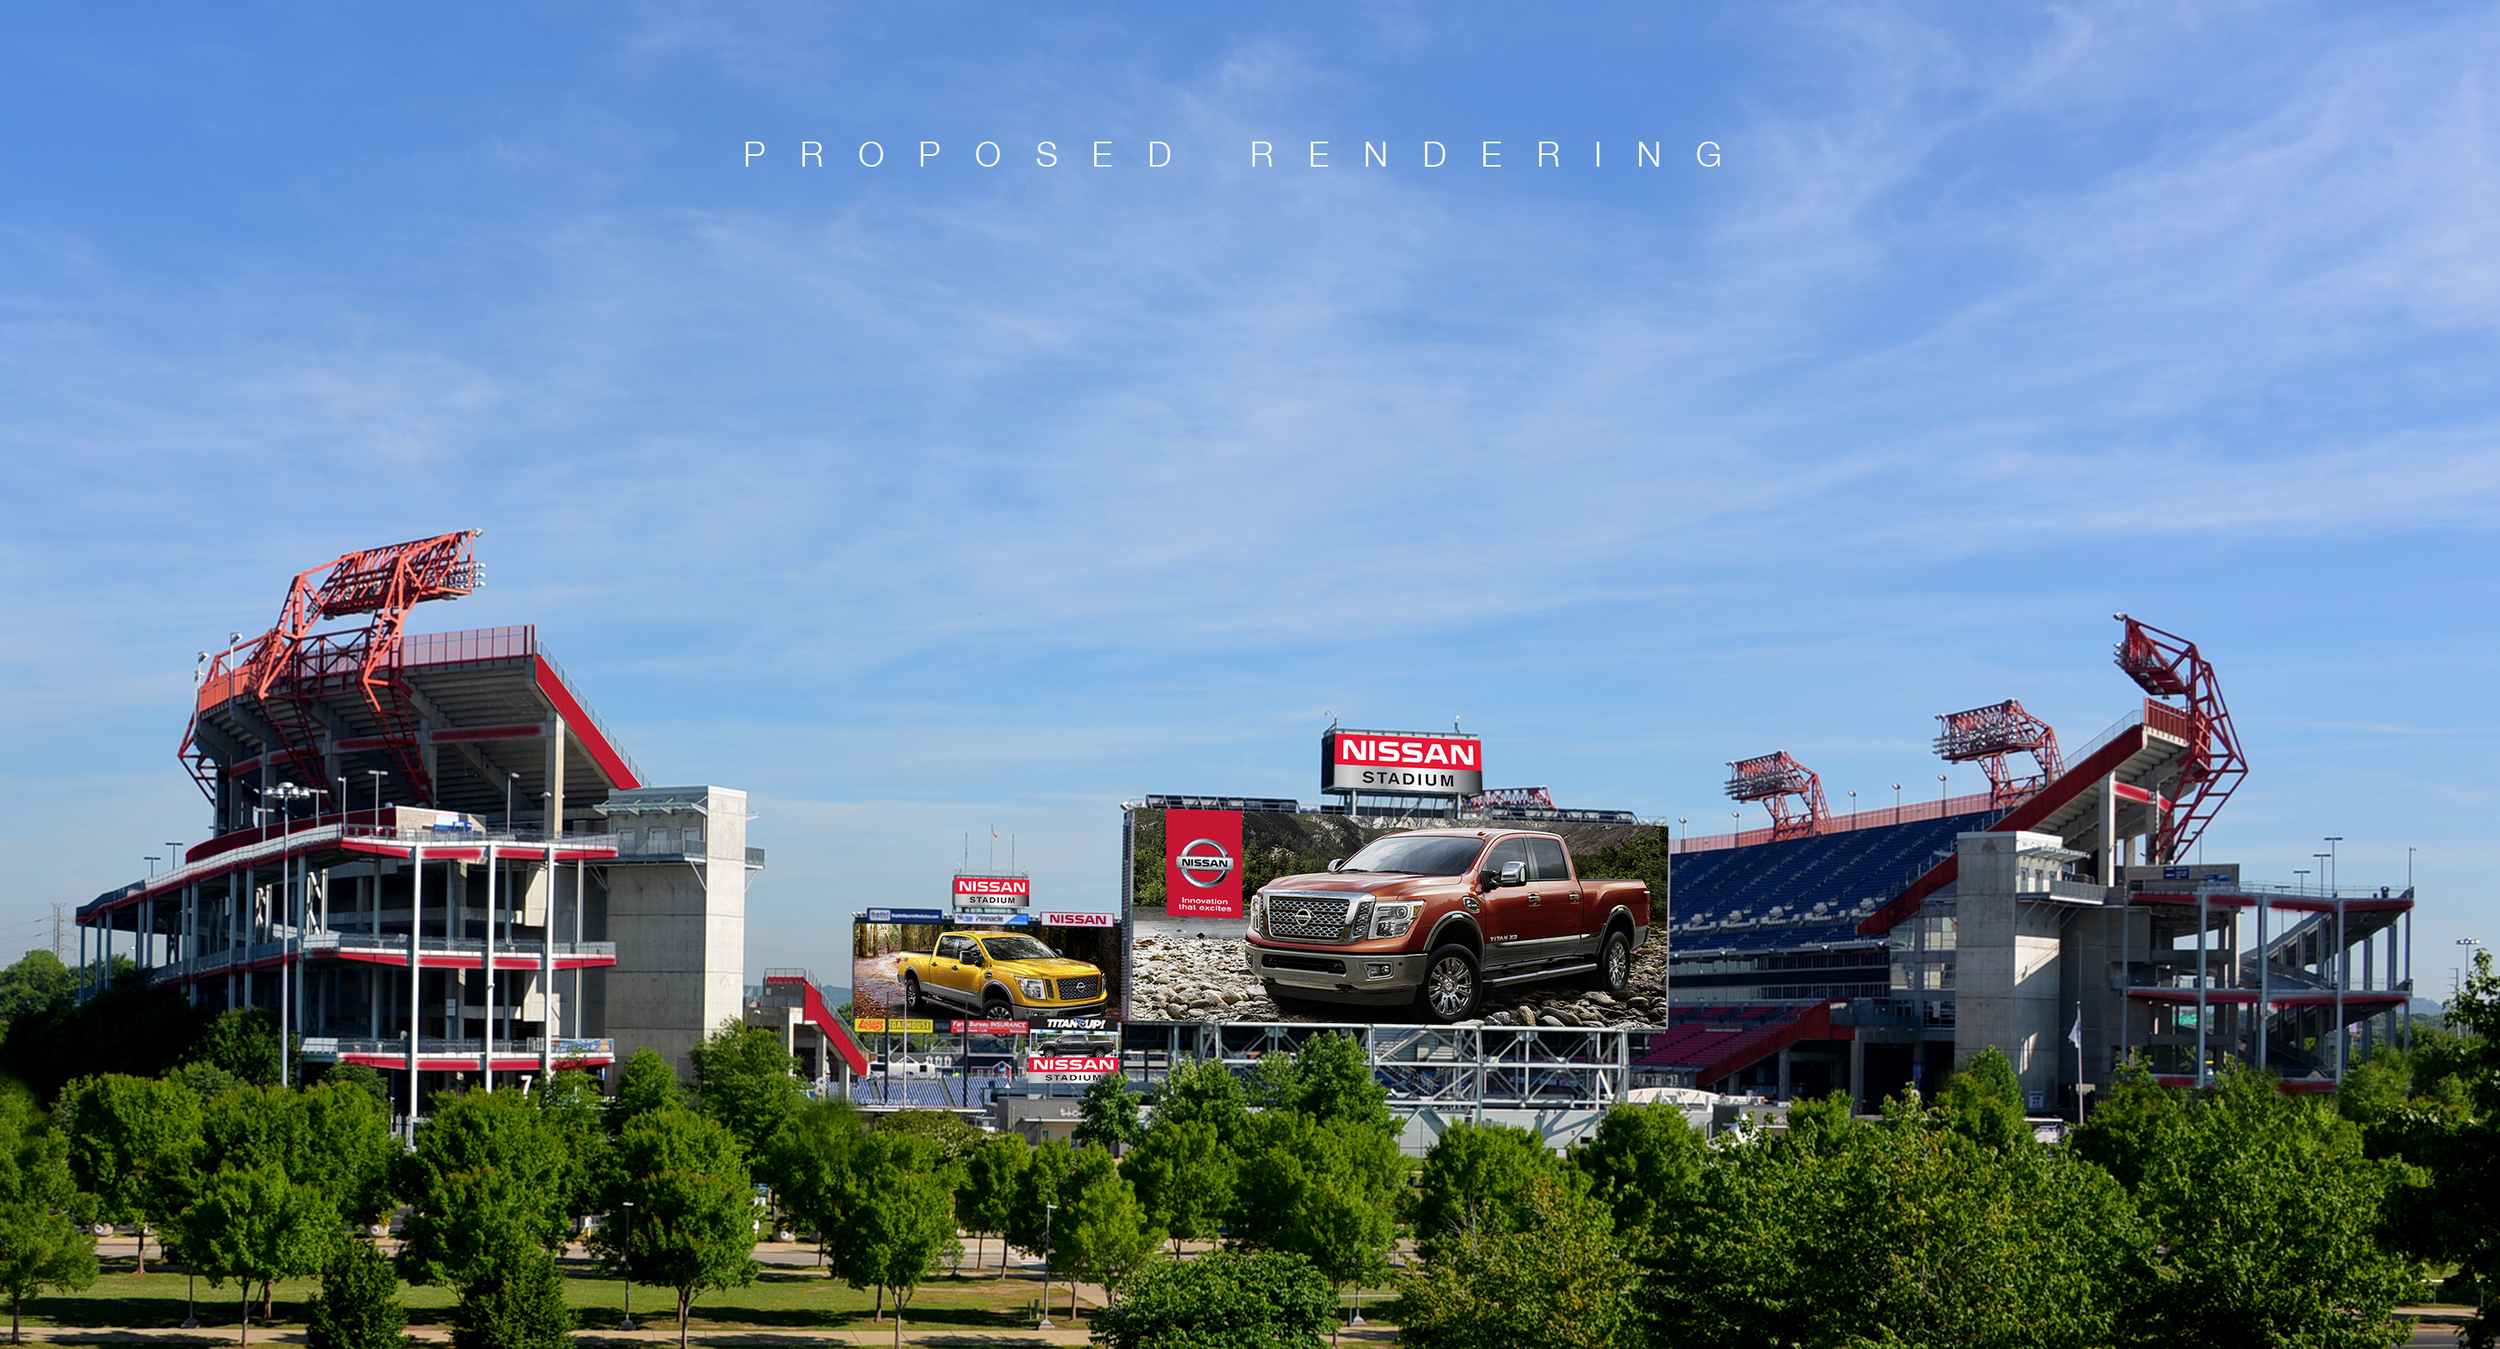 Nissan Stadium Renderings Photo Gallery